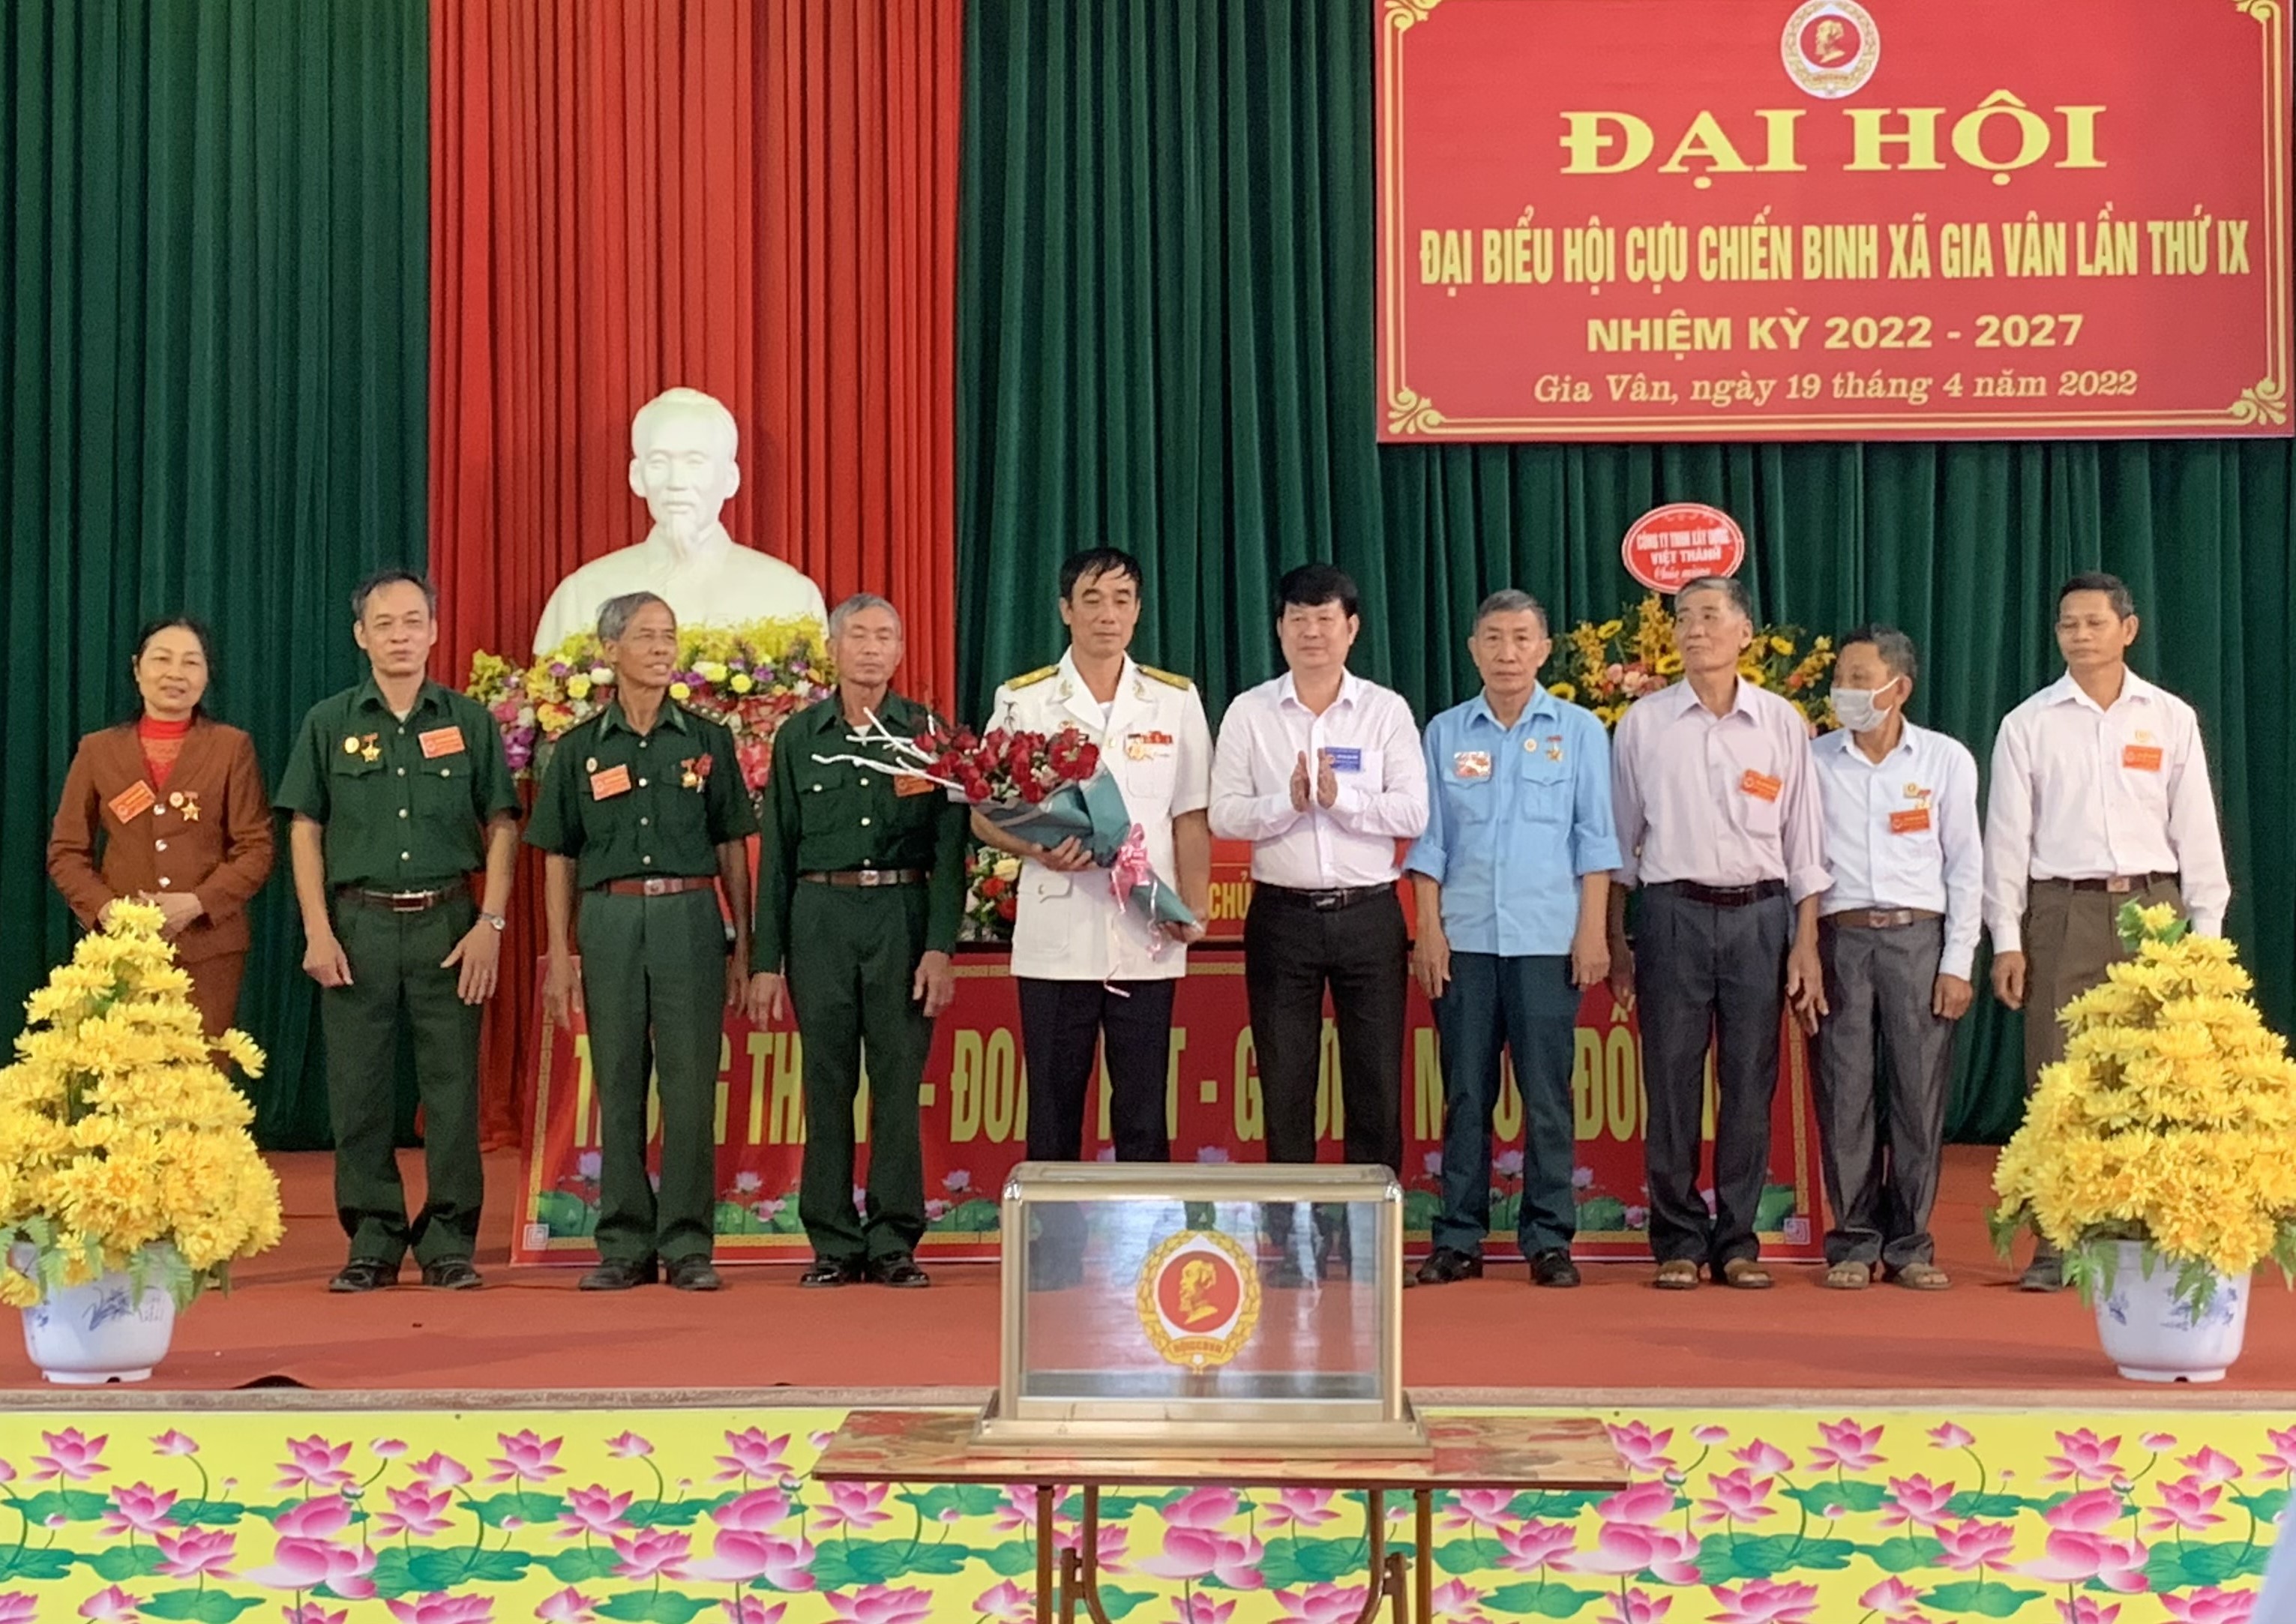 Đại hội đại biểu hội cựu chiến binh xã Gia Vân lần thứ IX Nhiệm kỳ 2022- 2027 lần thứ IX Nhiệm kỳ 2022- 2027